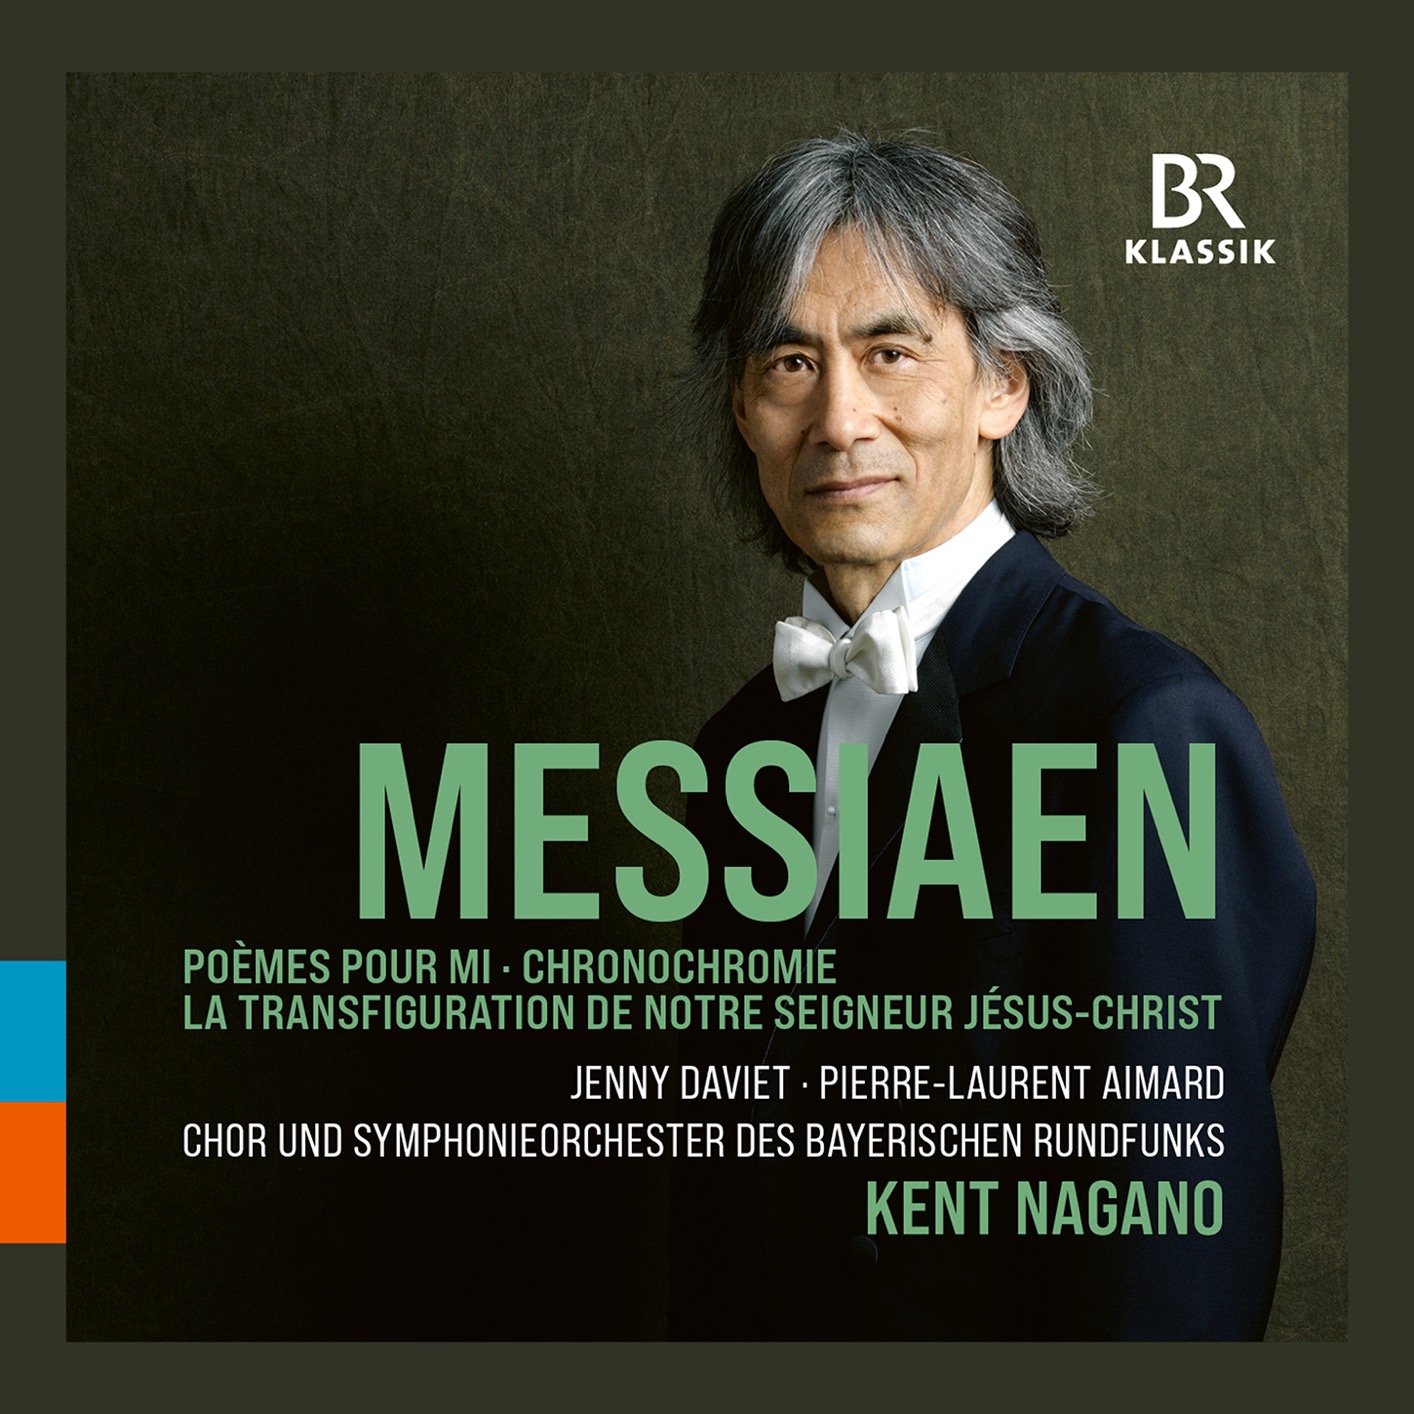 Chor und Symphonieorchester des Bayerischen Rundfunks & Kent Nagano - Messiaen - Orchestral Works (Live) (2021) [FLAC 24bit/48kHz]